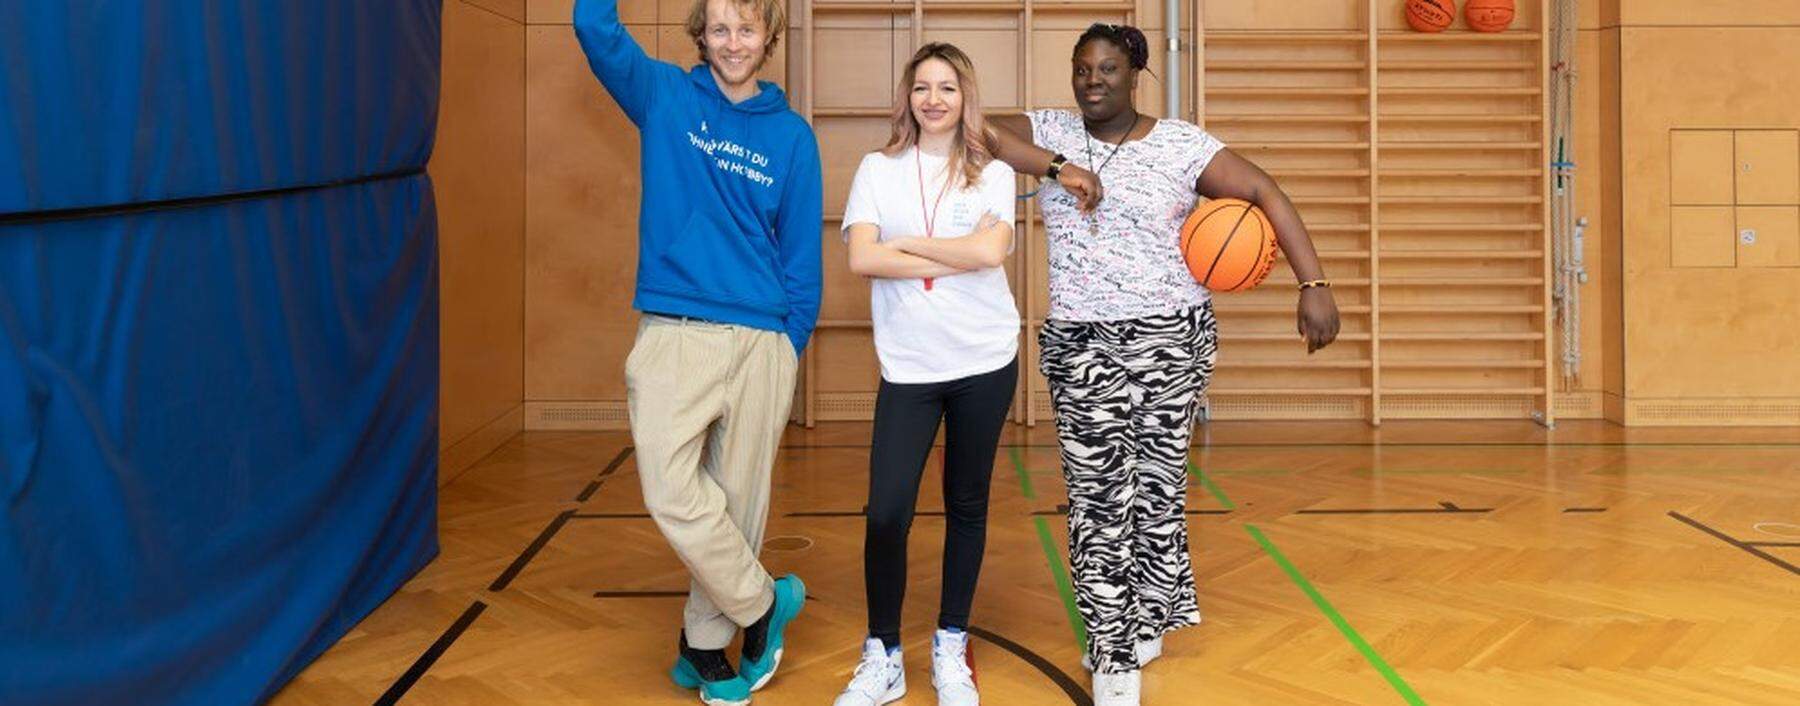 Konrad Küster, Patil Ghazigian und Janet Tetteh-Klu leiten den Basketballkurs und bieten den Kindern damit „eine sinnvolle Alternative zum Handy“.  